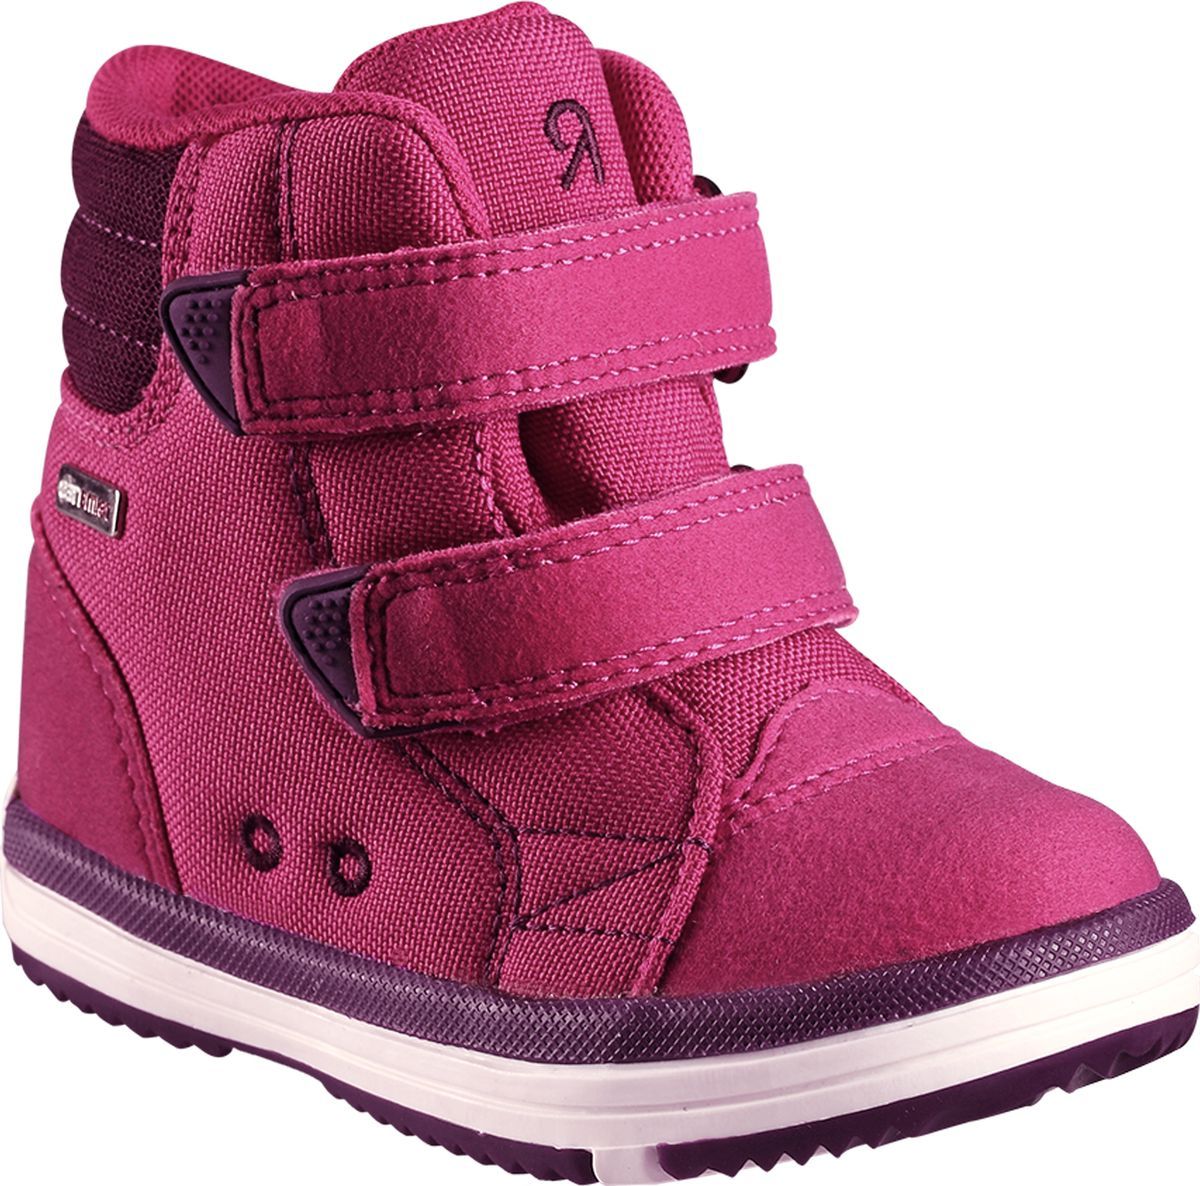 Ботинки детские Reima Patter, цвет: розовый. 5693443600. Размер 23